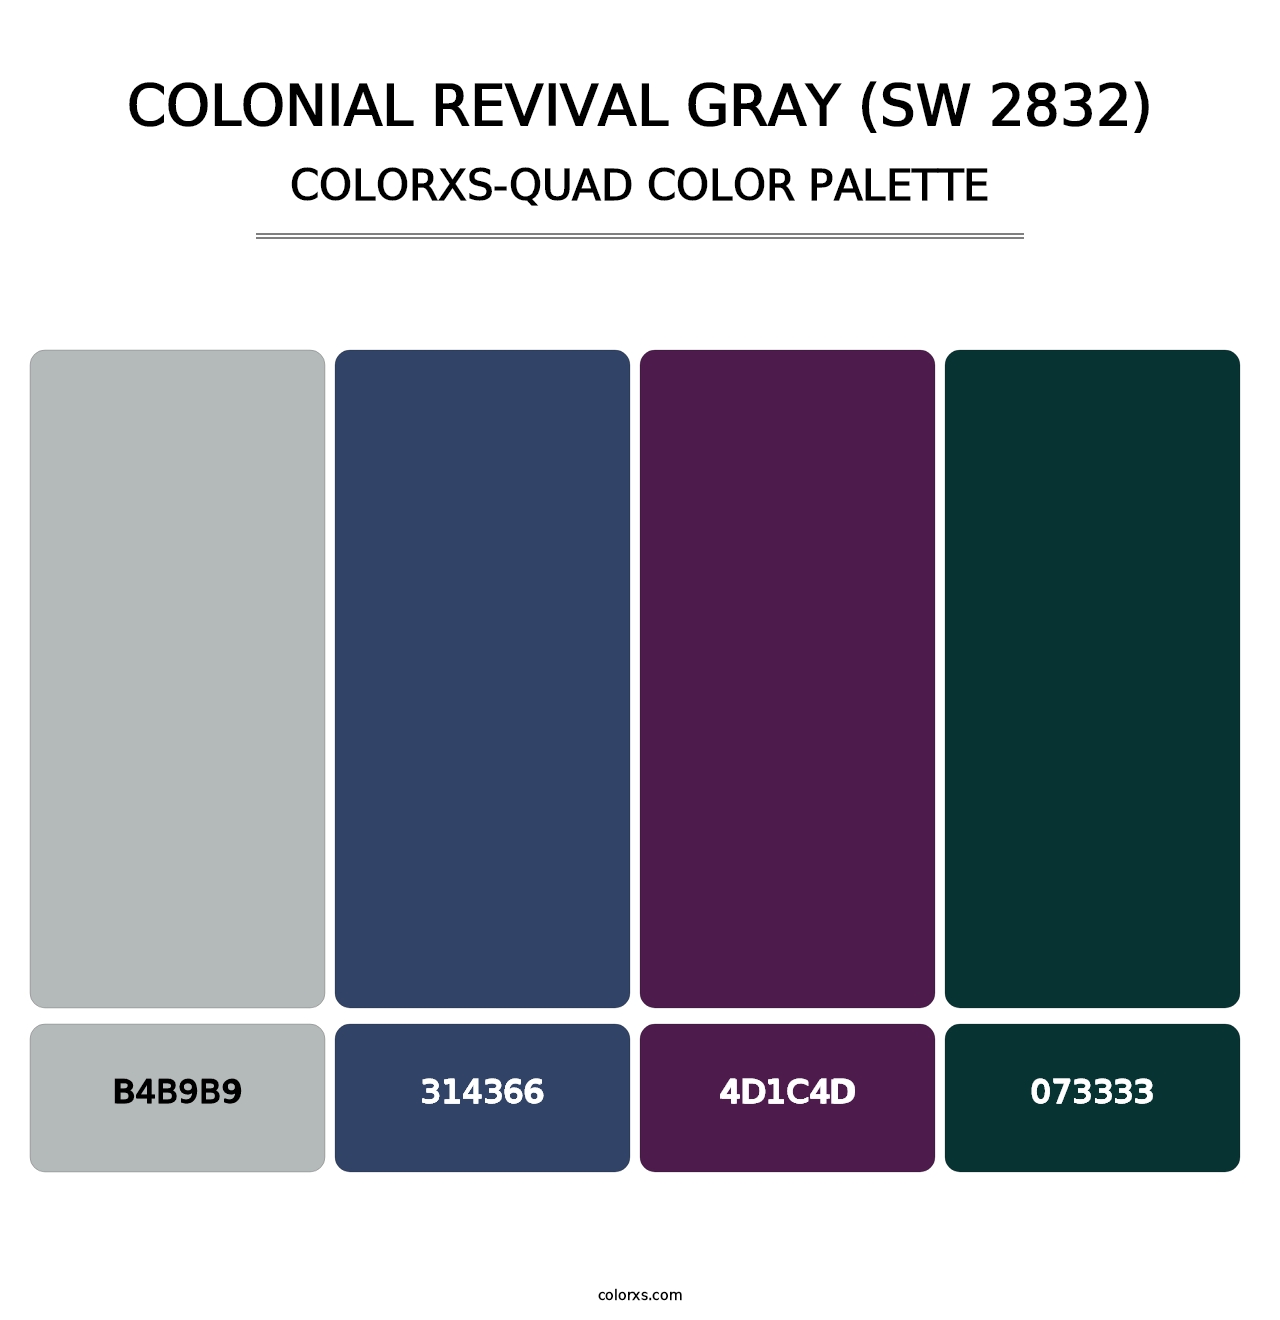 Colonial Revival Gray (SW 2832) - Colorxs Quad Palette